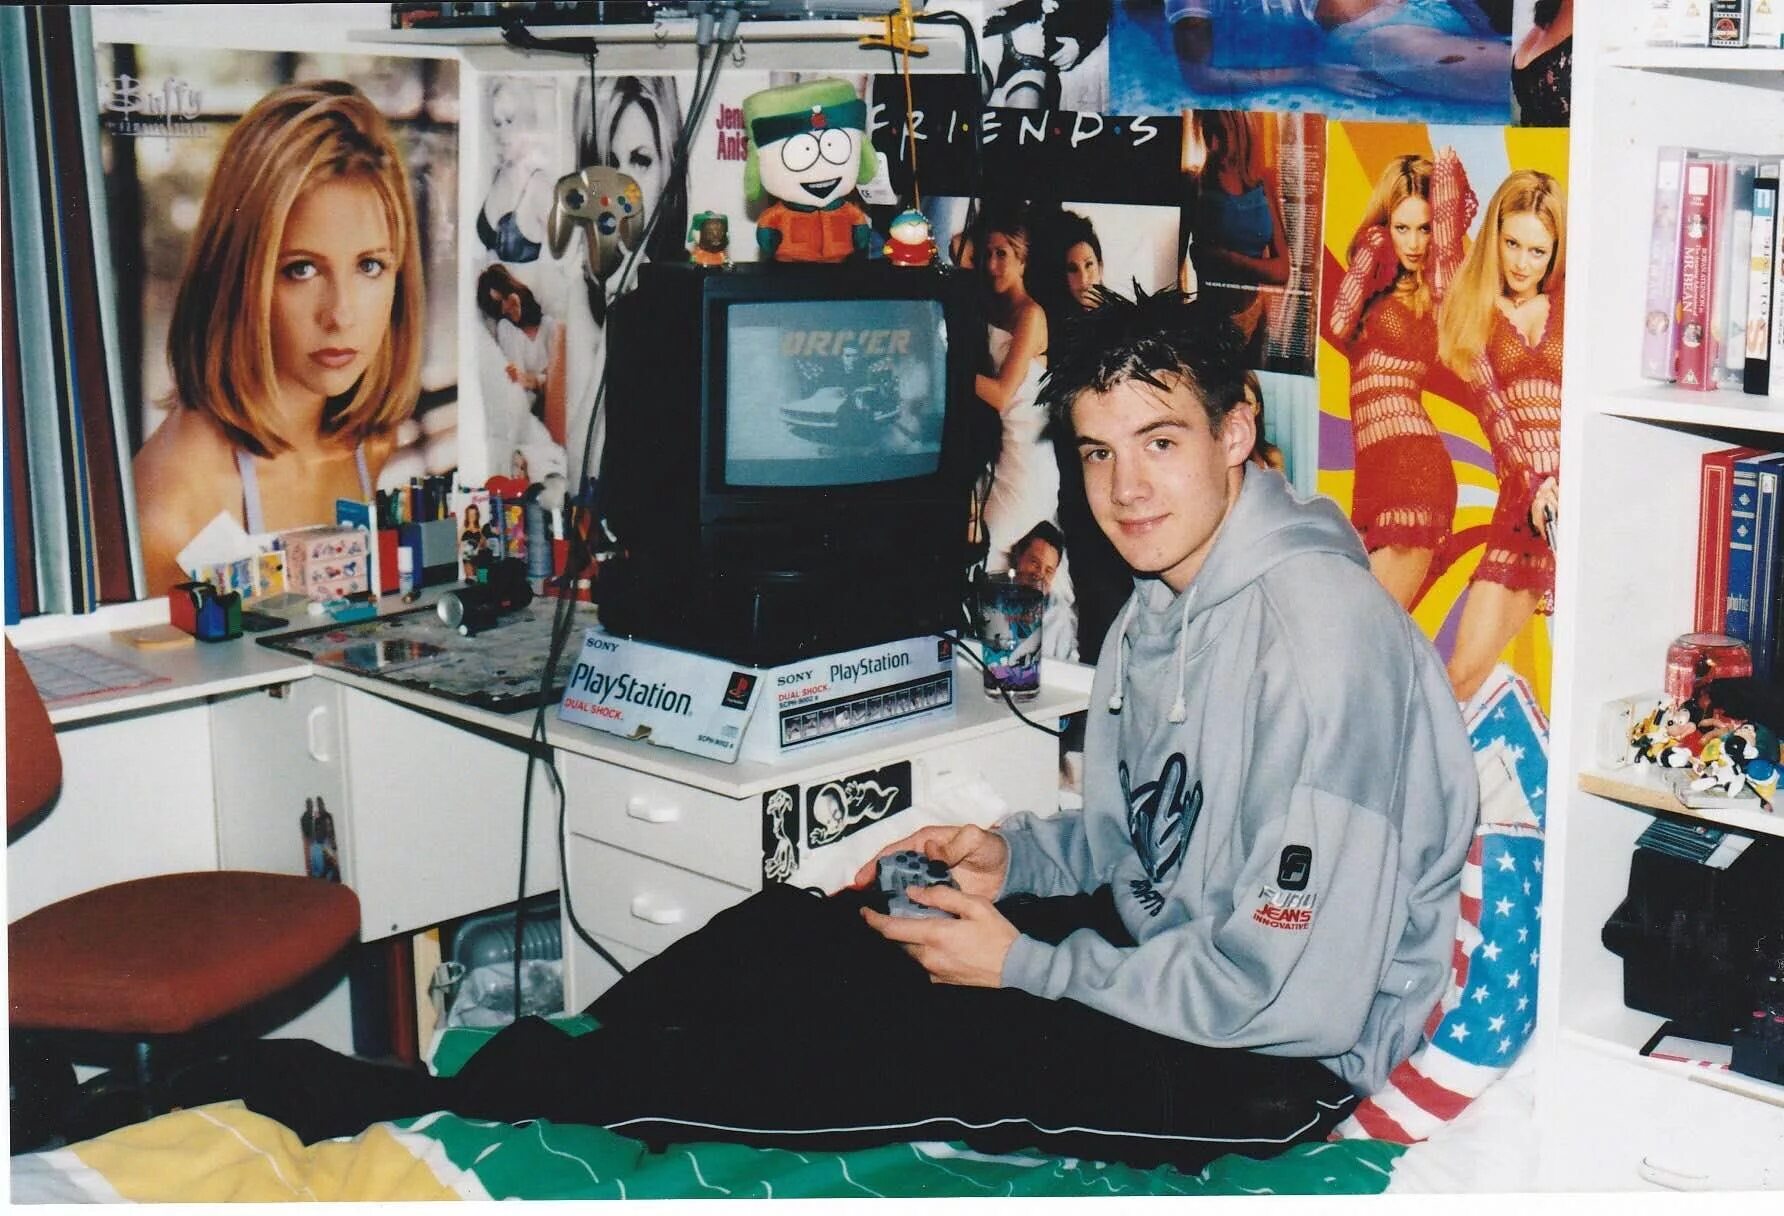 The teenager s world. Компьютерная комната 90х. Комната подростка 90-е. Атмосфера 90-х. Комната американского подростка 90х.